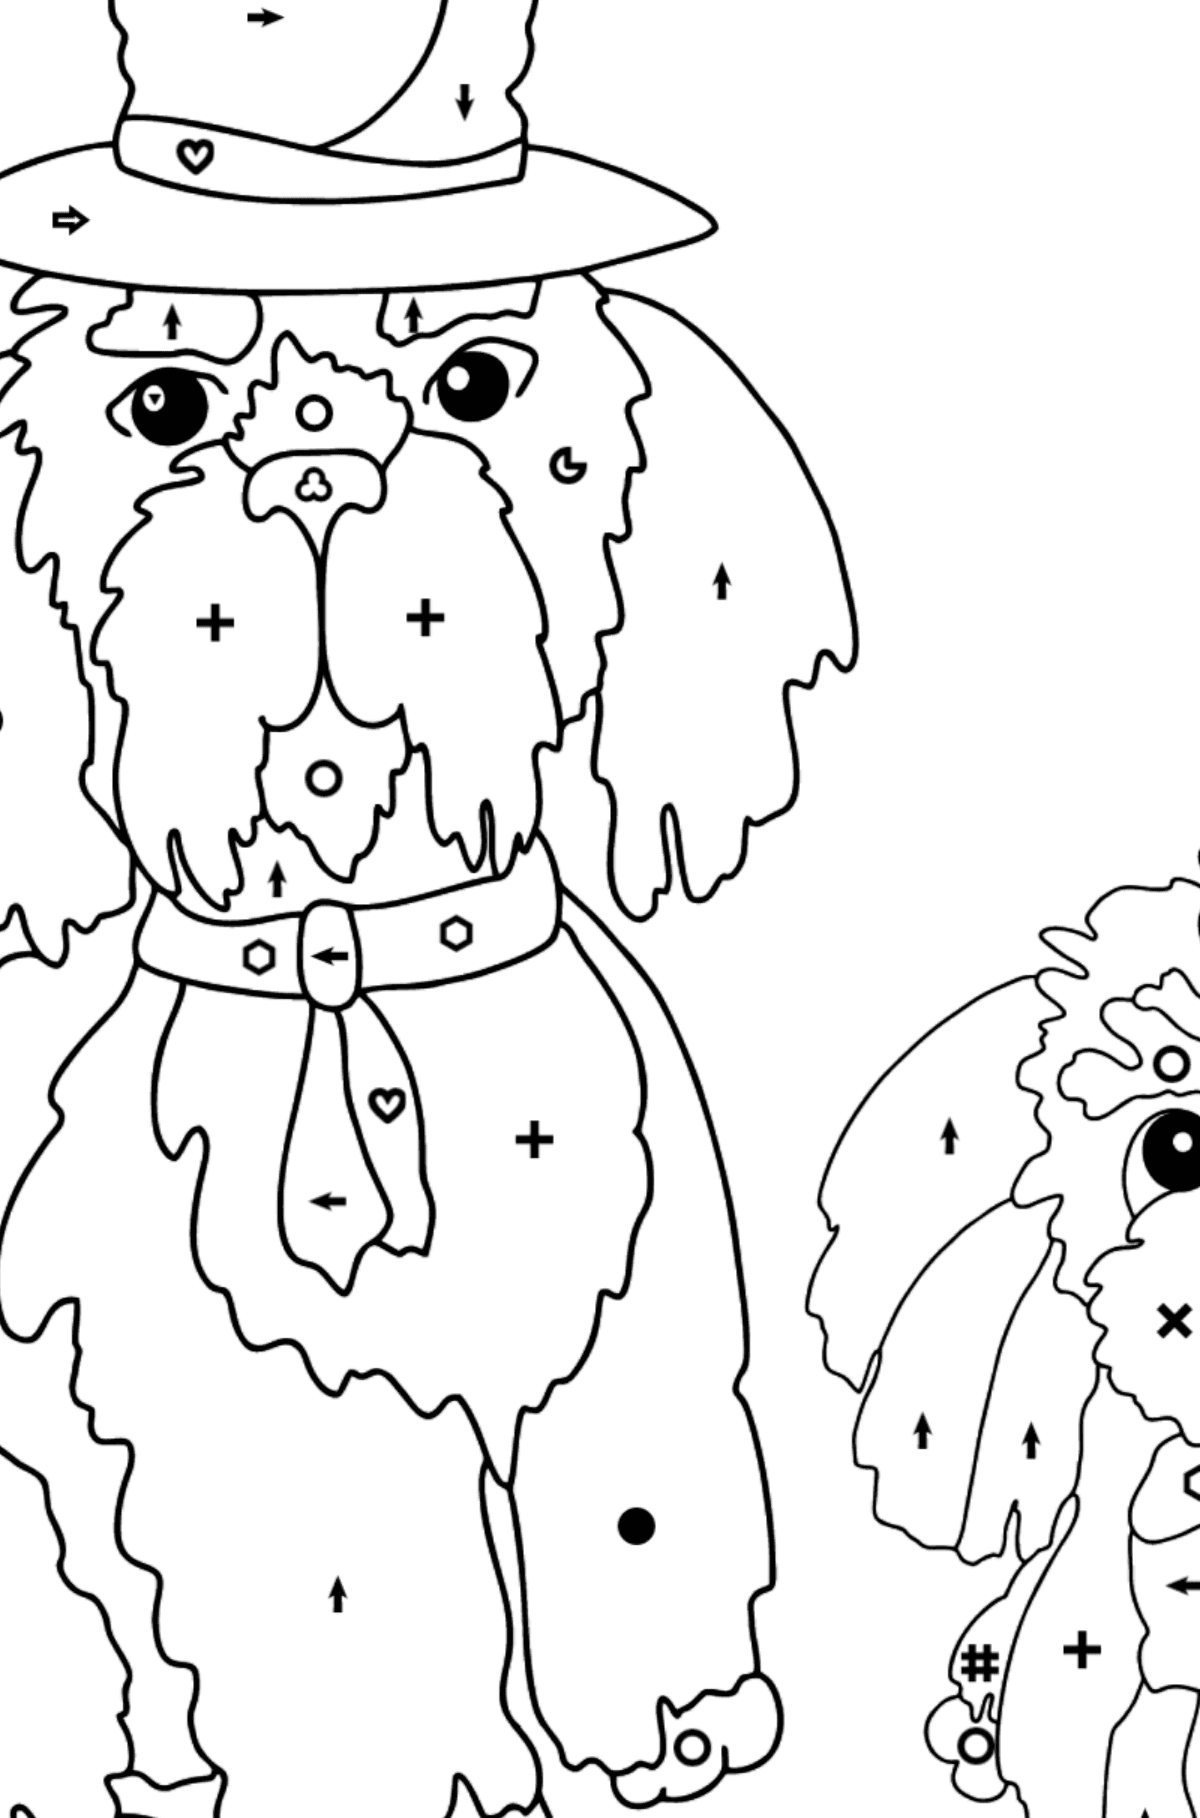 Boyama sayfası iyi köpekler (zor) - Sembollere ve Geometrik Şekillerle Boyama çocuklar için